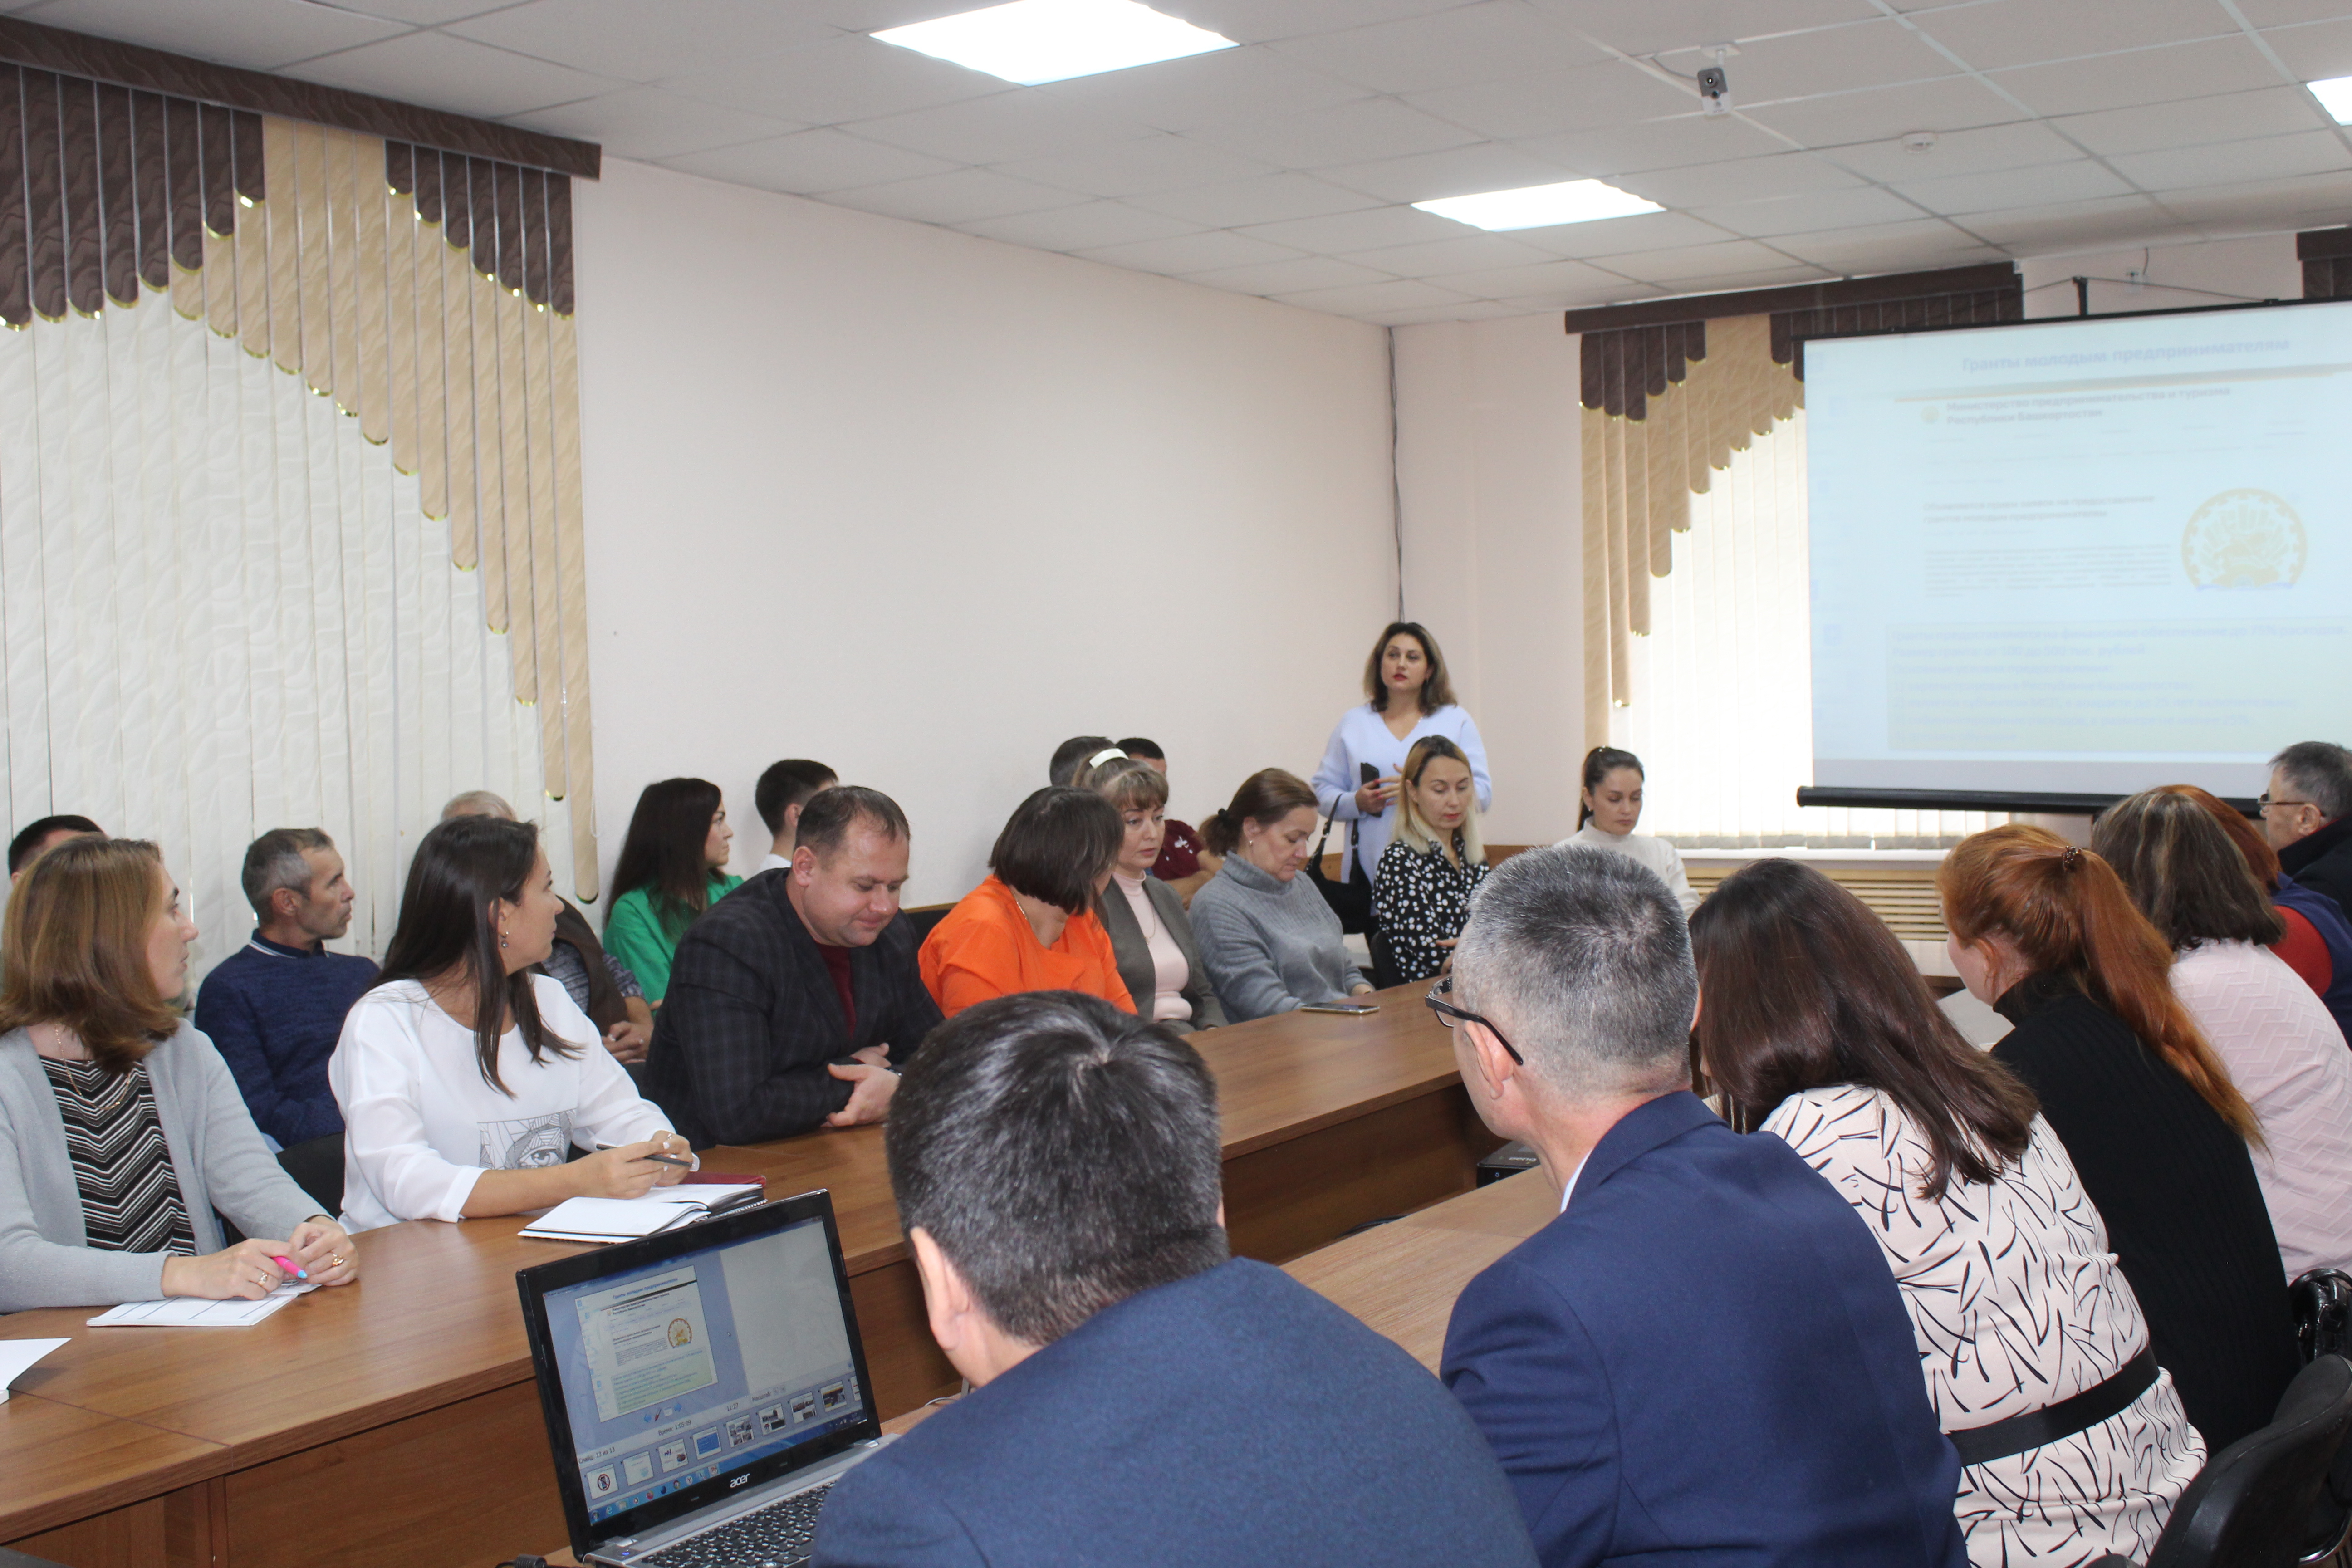 Встреча главы администрации Бакалинского района А.Г. Андреева с предпринимателями